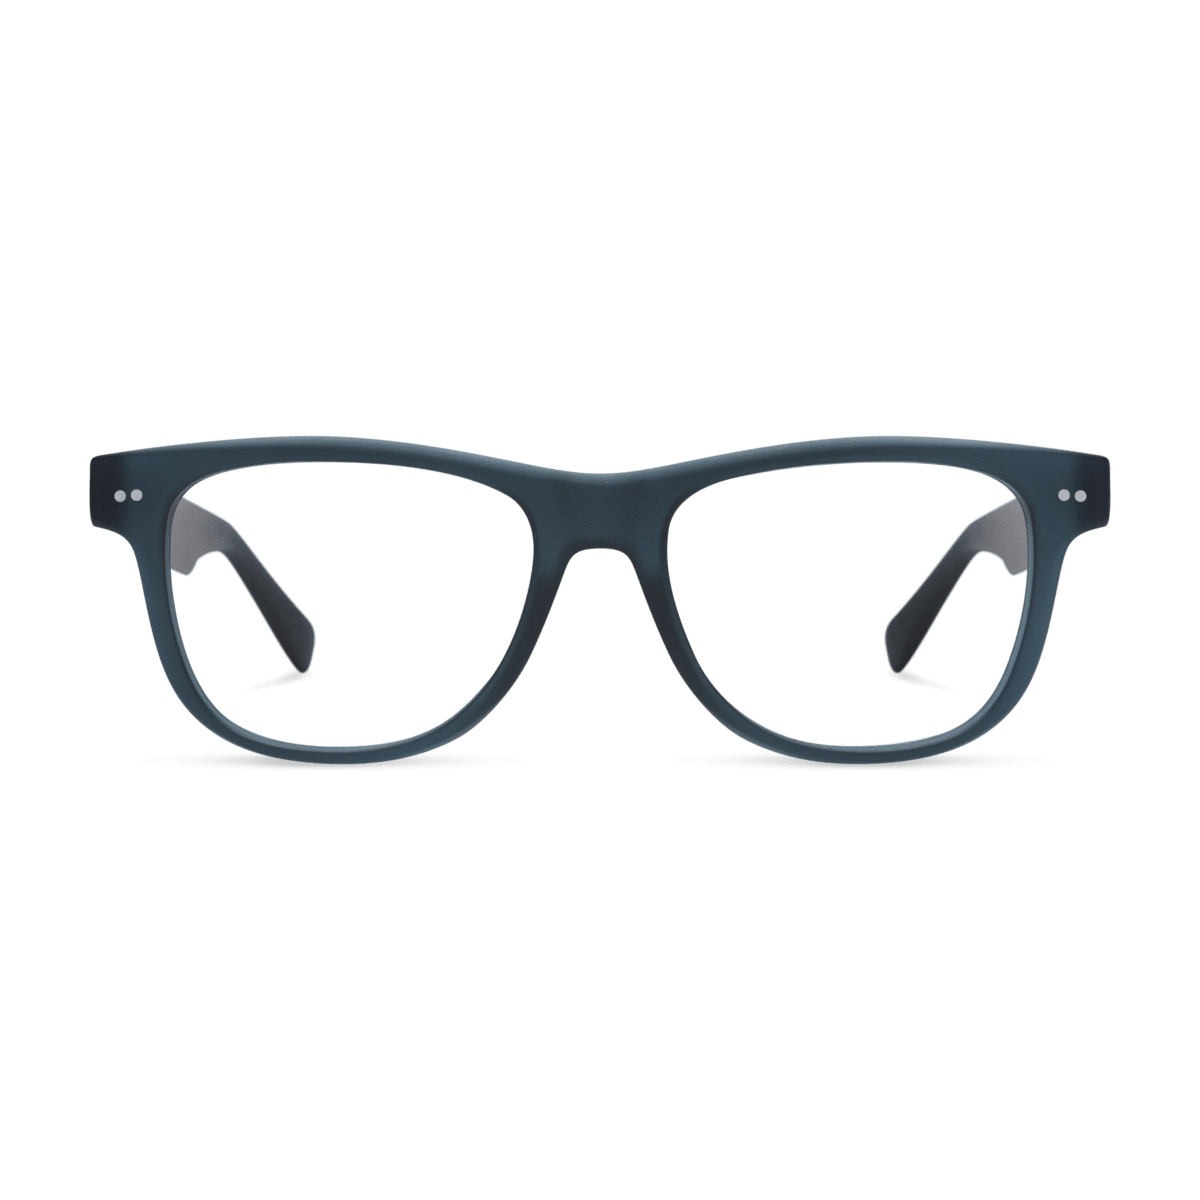 Sullivan Readers Eyeglasses LOOK OPTIC (Navy) +1.00 